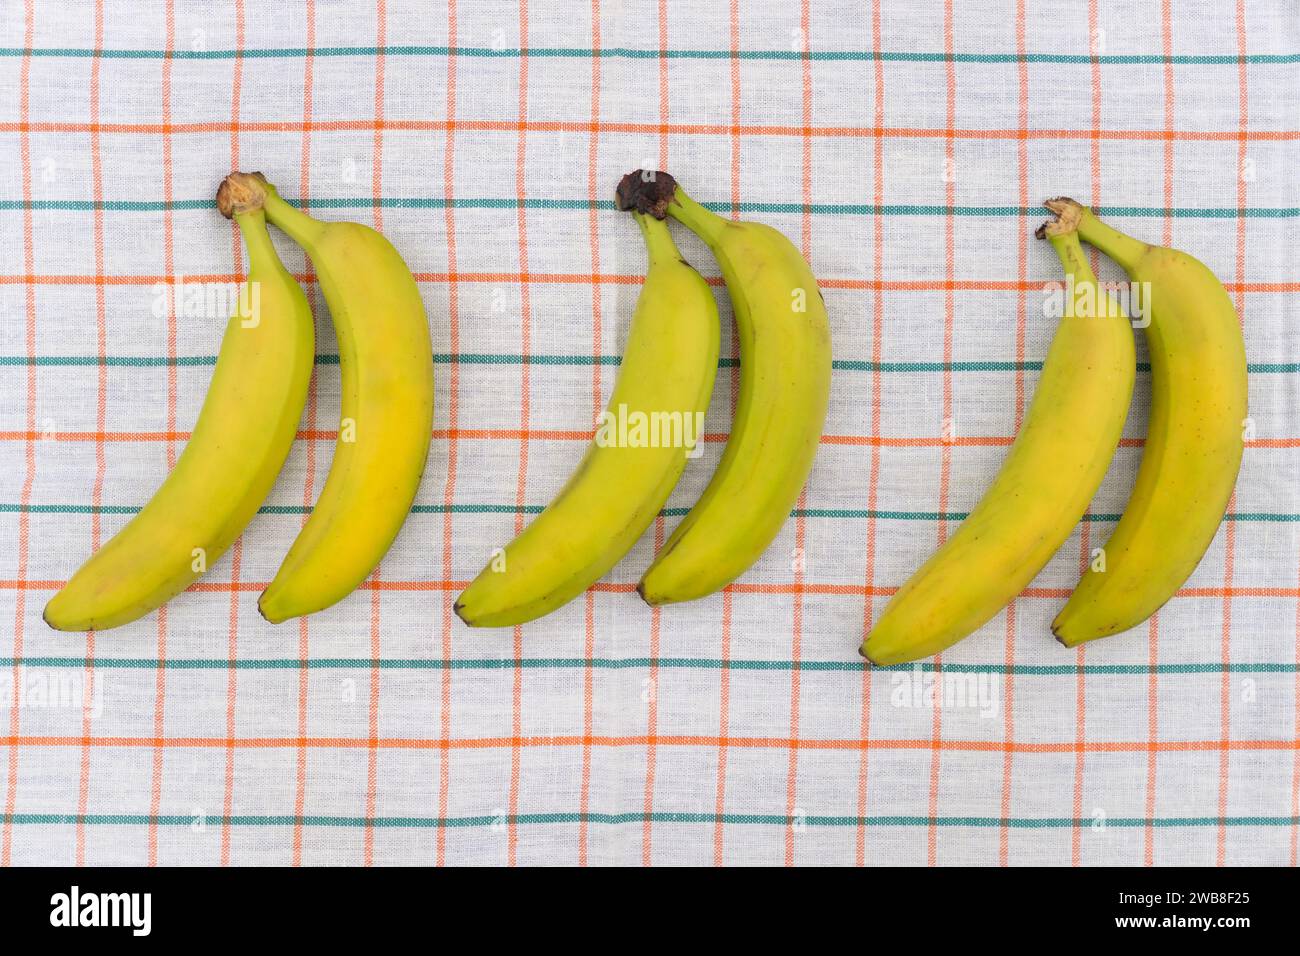 Banane gialle mature su tovaglia bianca Foto Stock